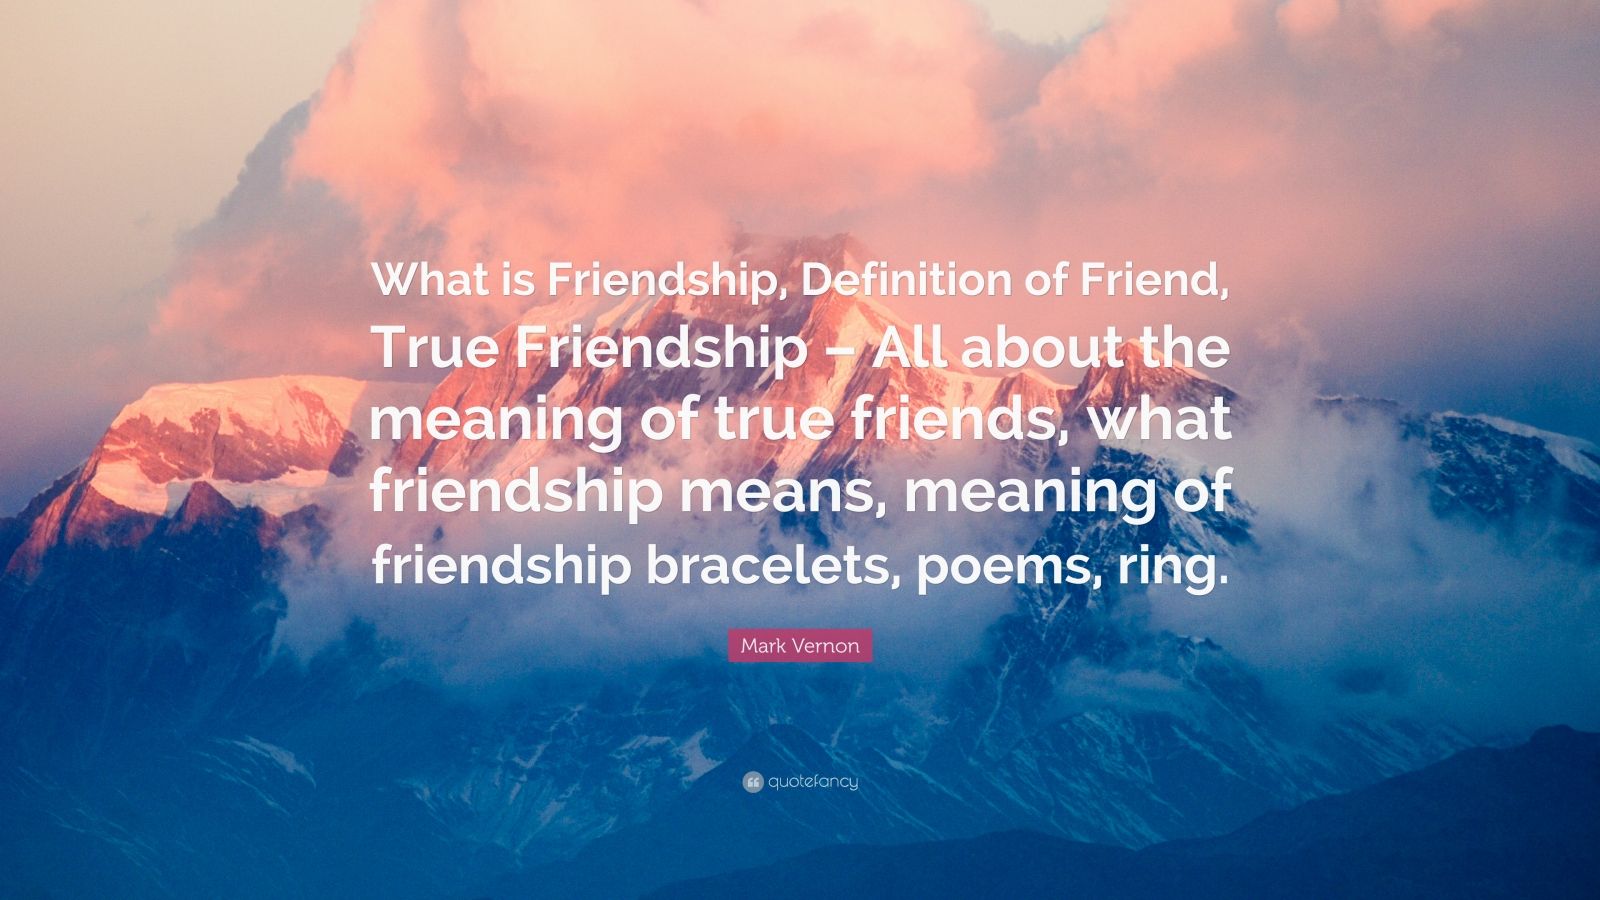 true friendship definition essay